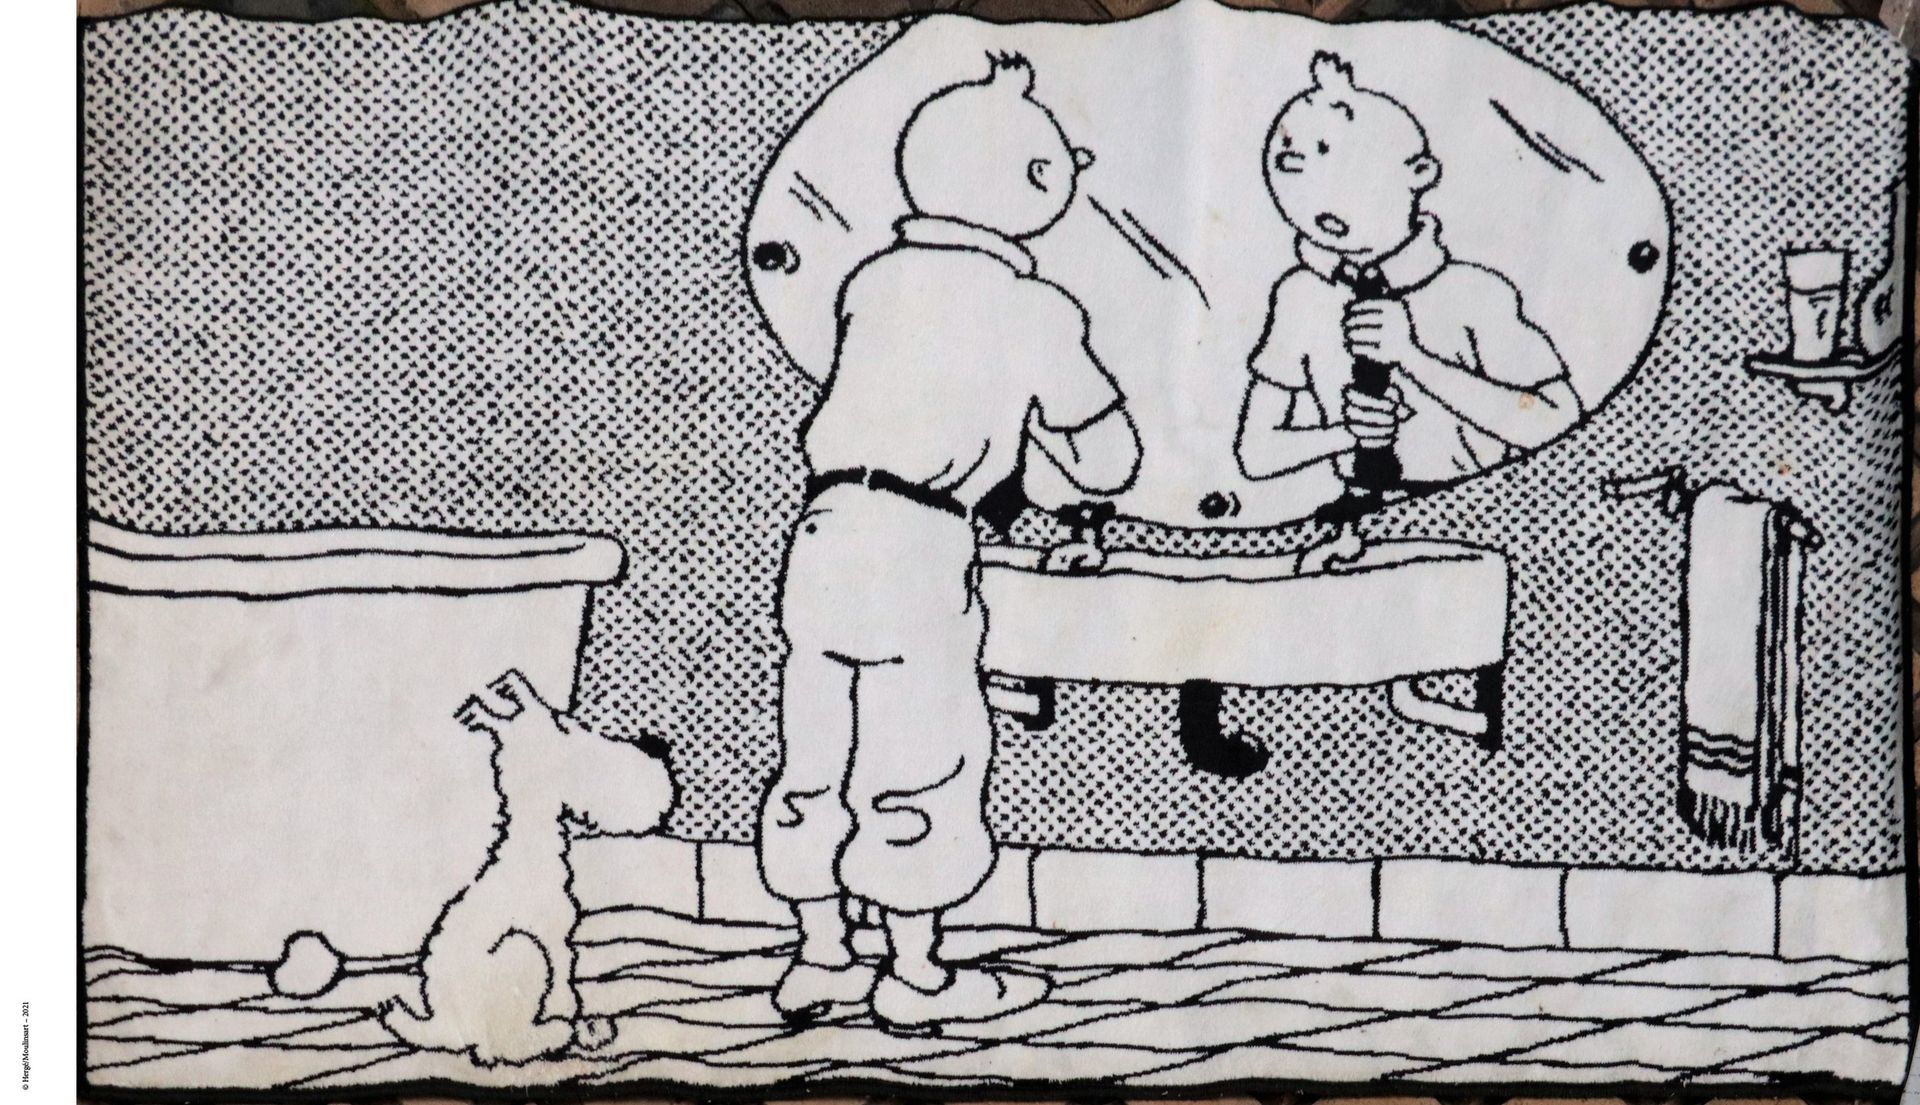 Dérivés Tapis de bain édité par Axis (1995)

Tintin ajustant sa cravate dans sa &hellip;